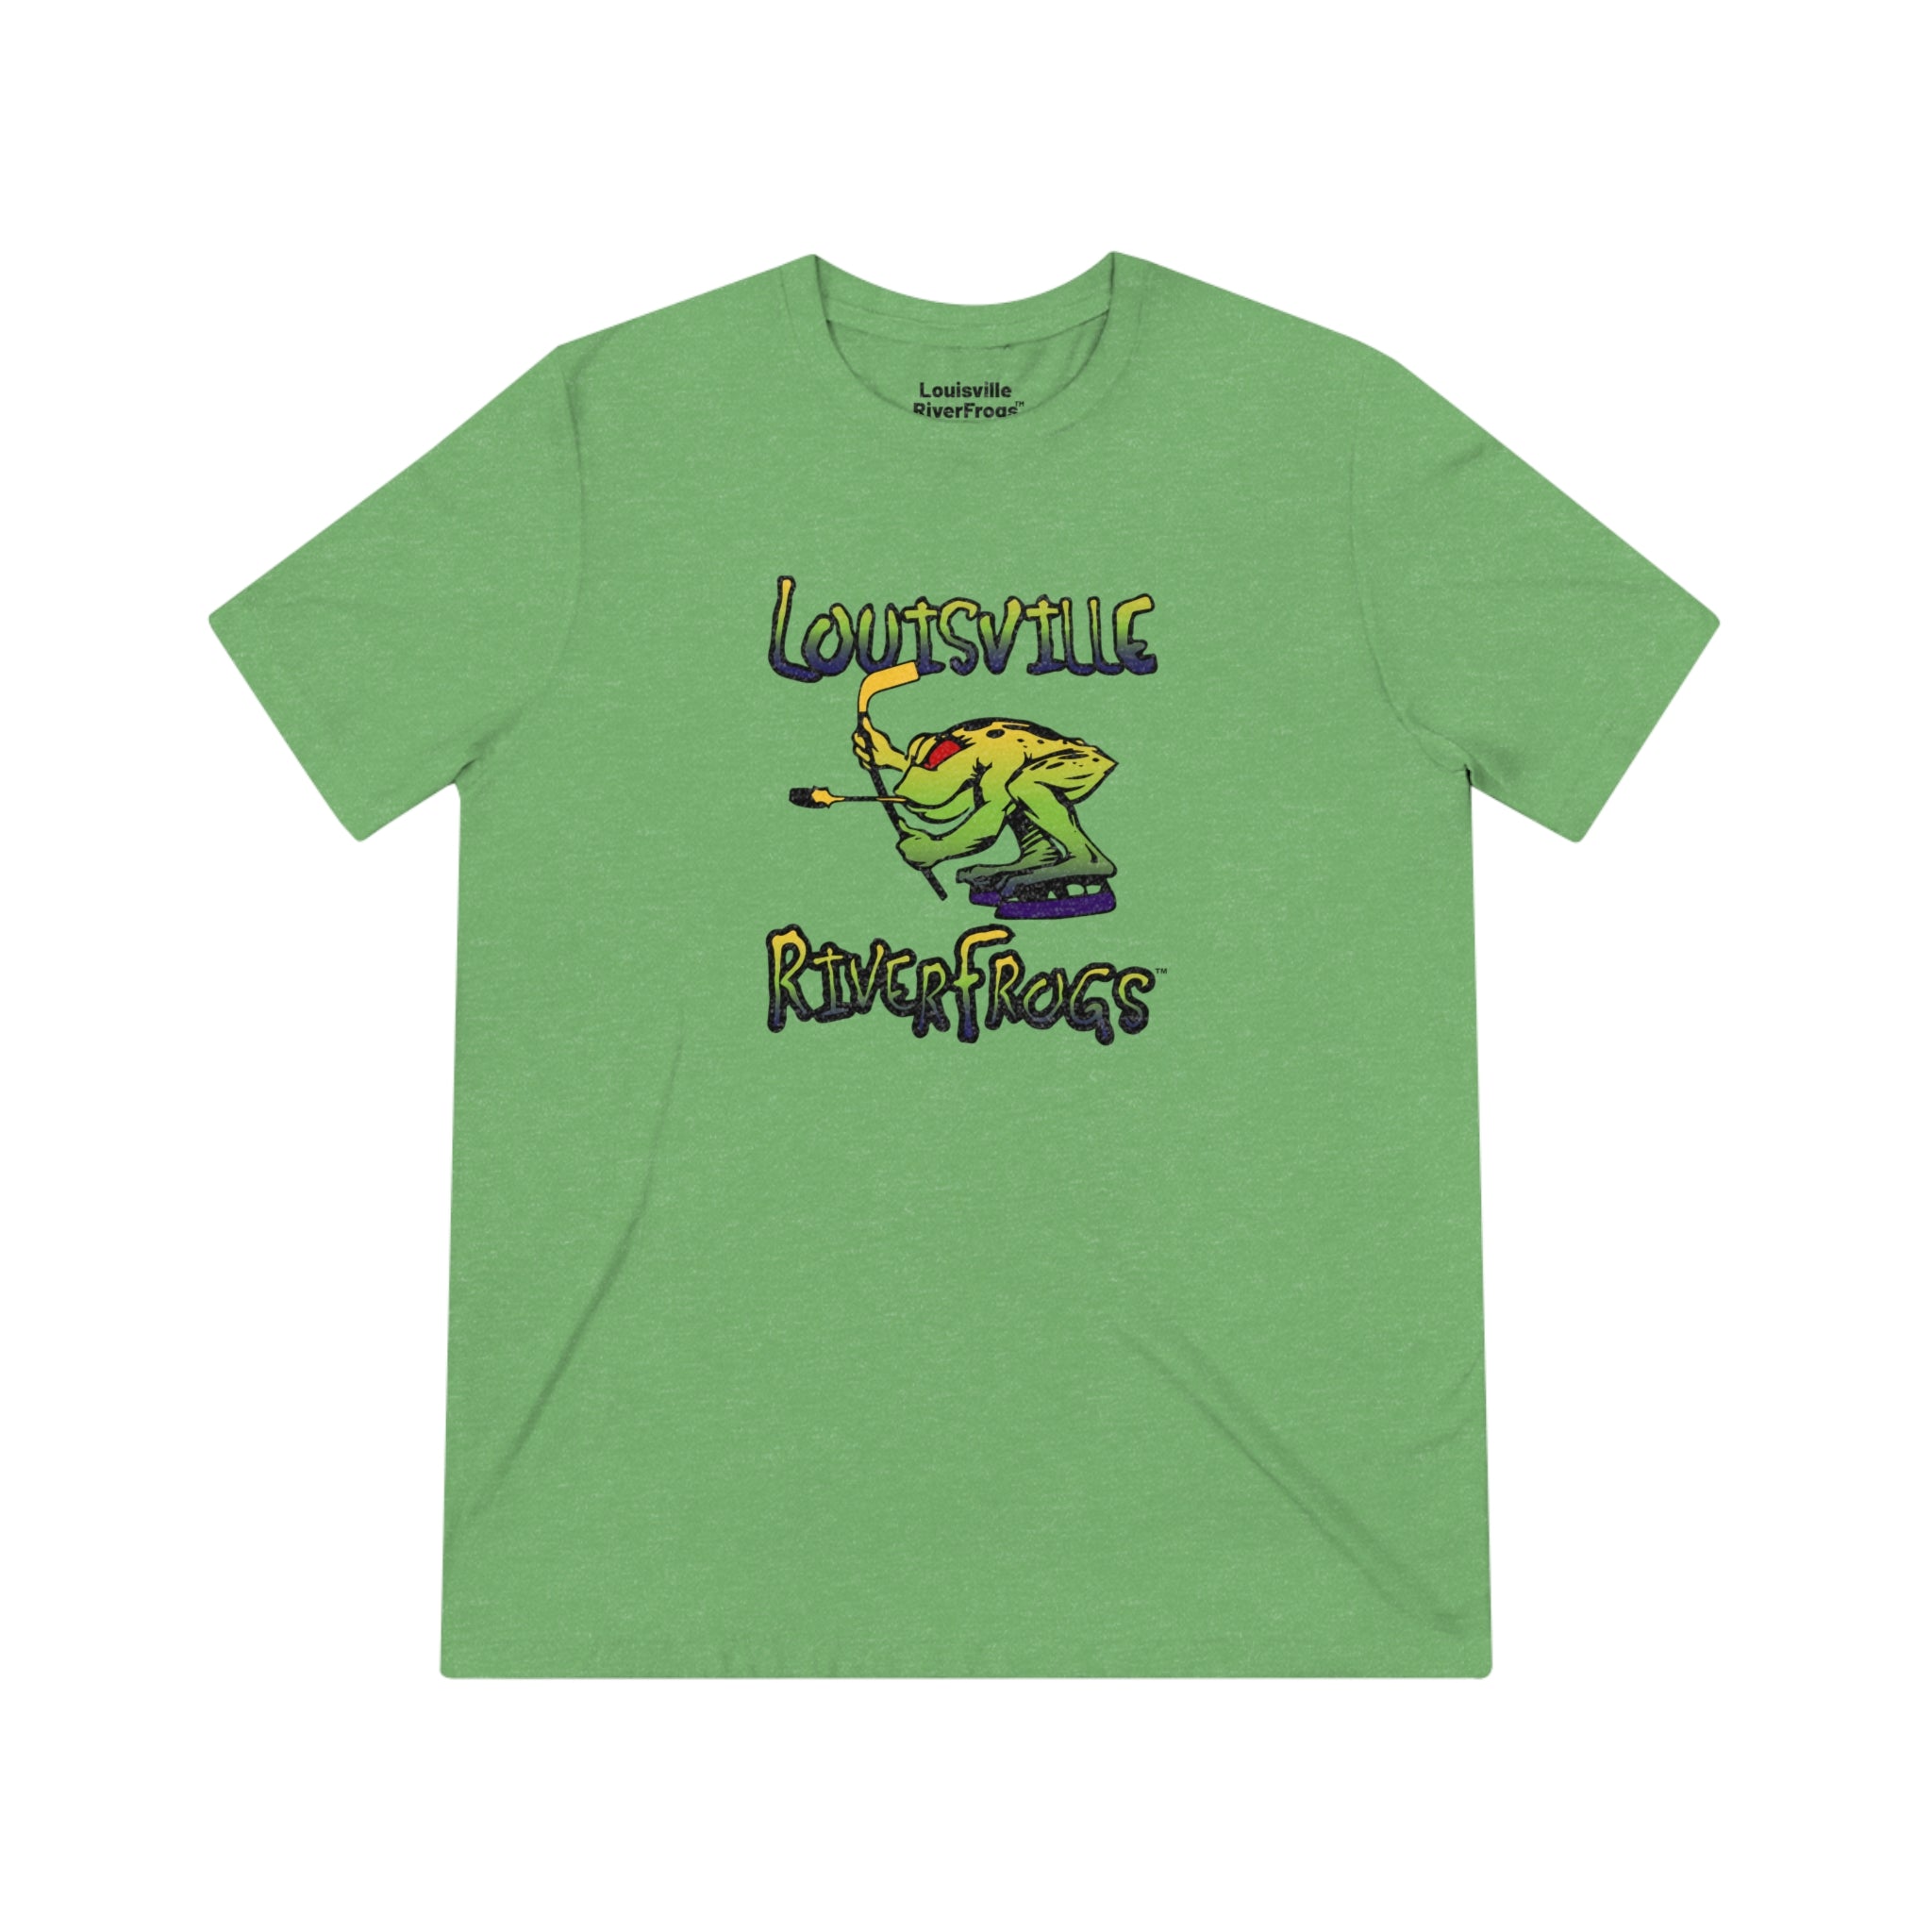 Louisville RiverFrogs™ T-Shirt (Tri-Blend Super Light)